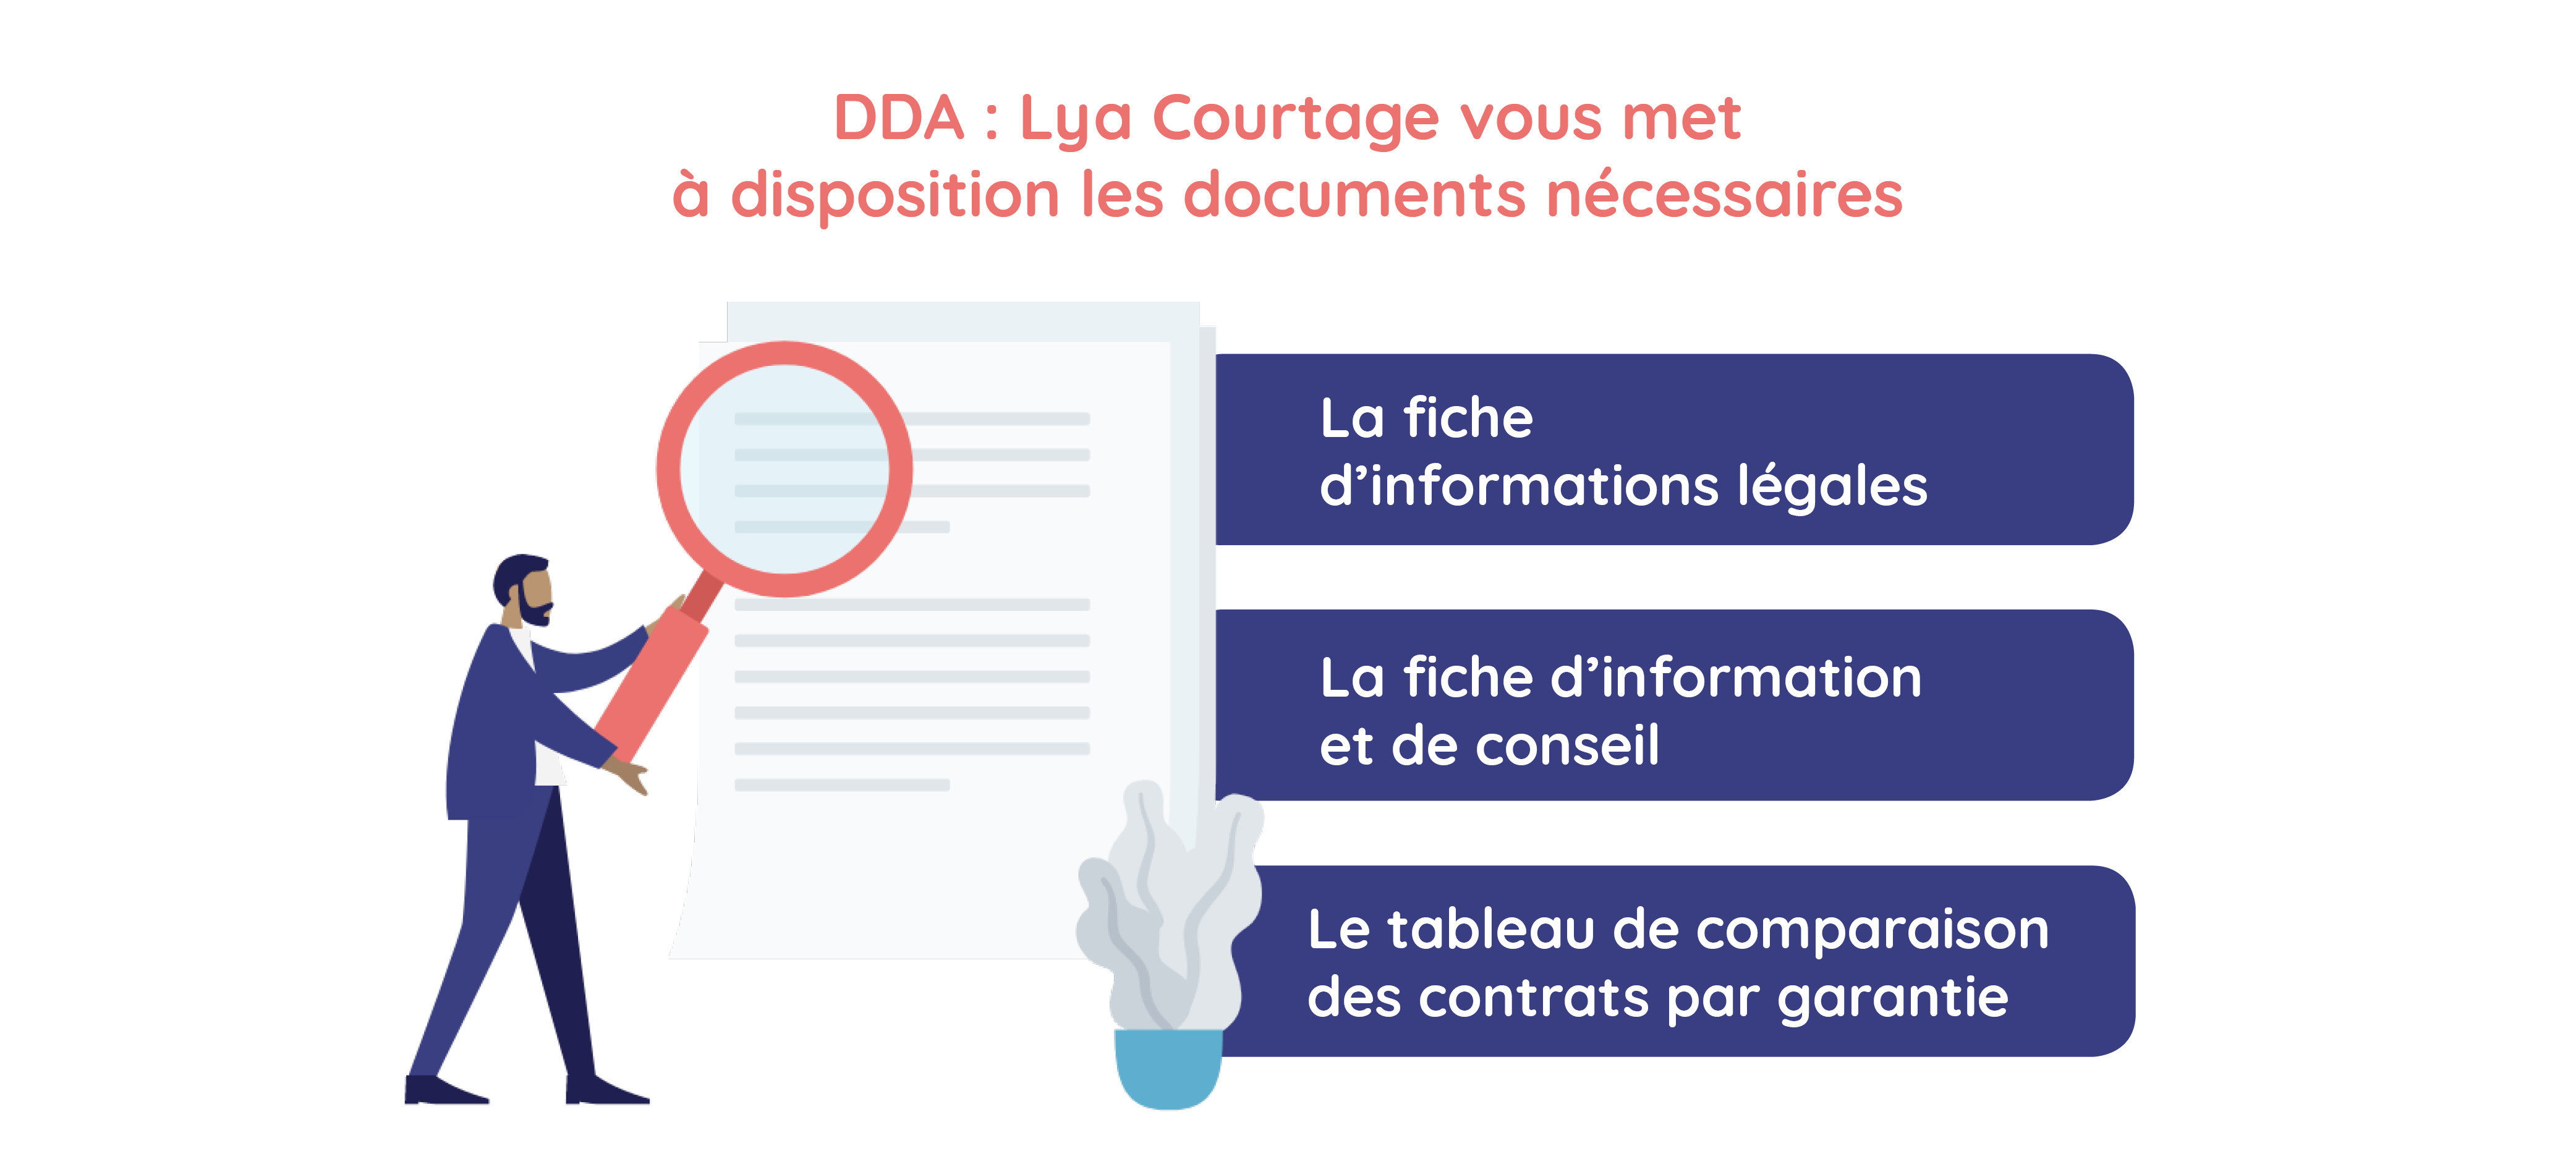 Documents conformité DDA